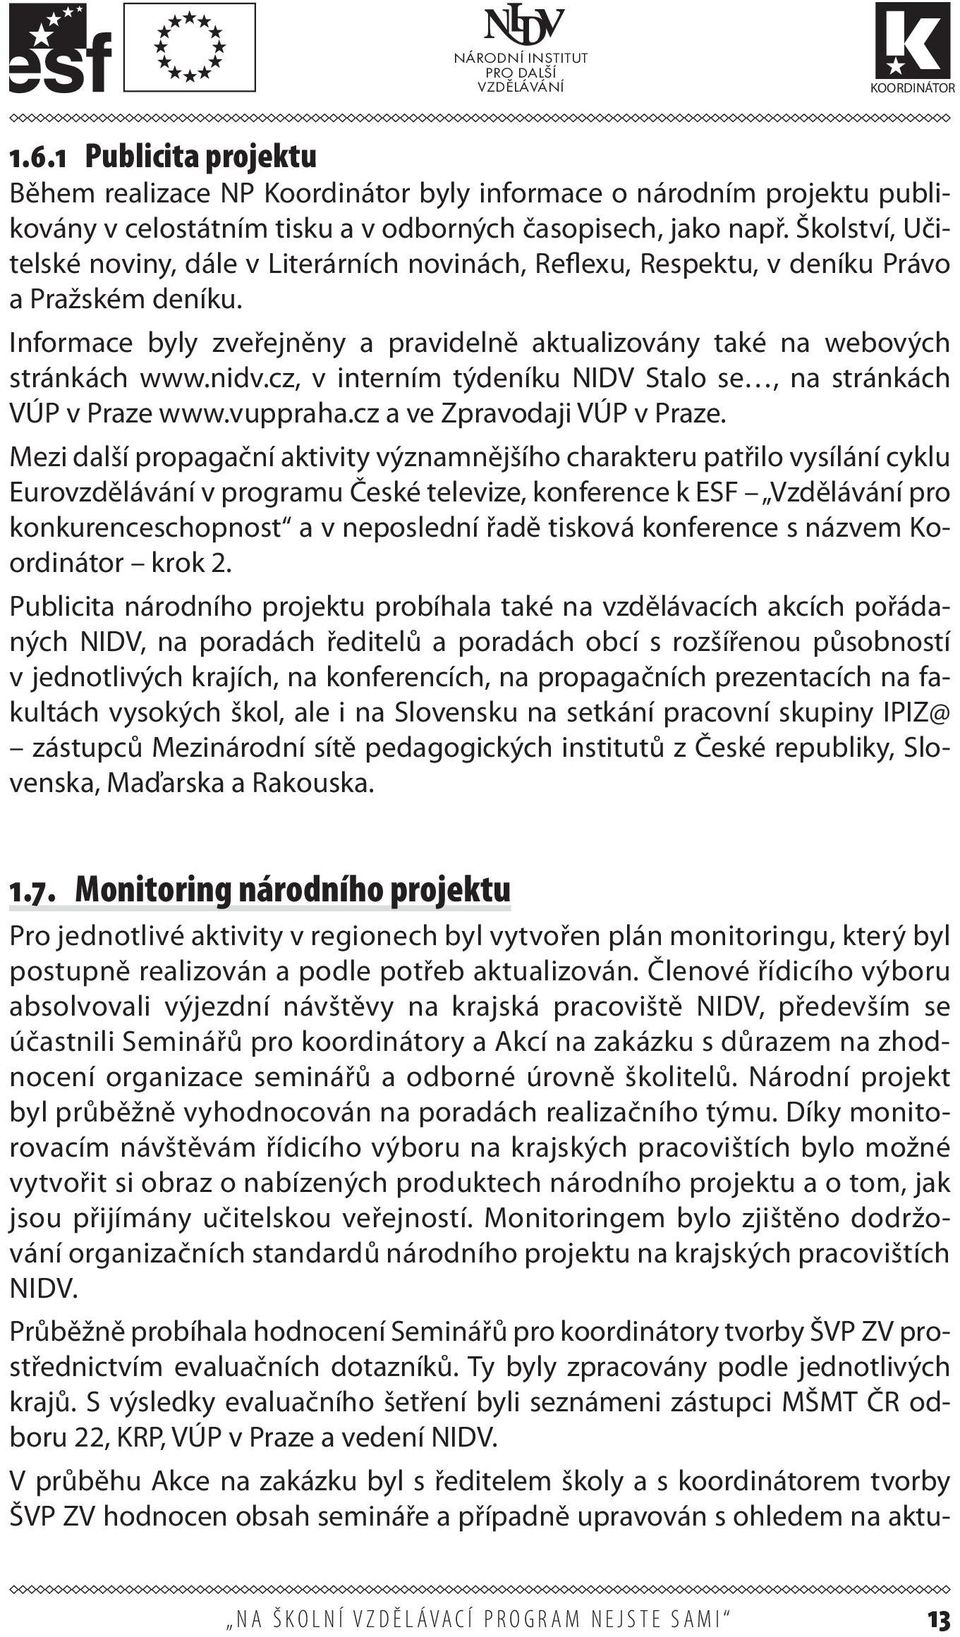 cz, v interním týdeníku NIDV Stalo se, na stránkách VÚP v Praze www.vuppraha.cz a ve Zpravodaji VÚP v Praze.